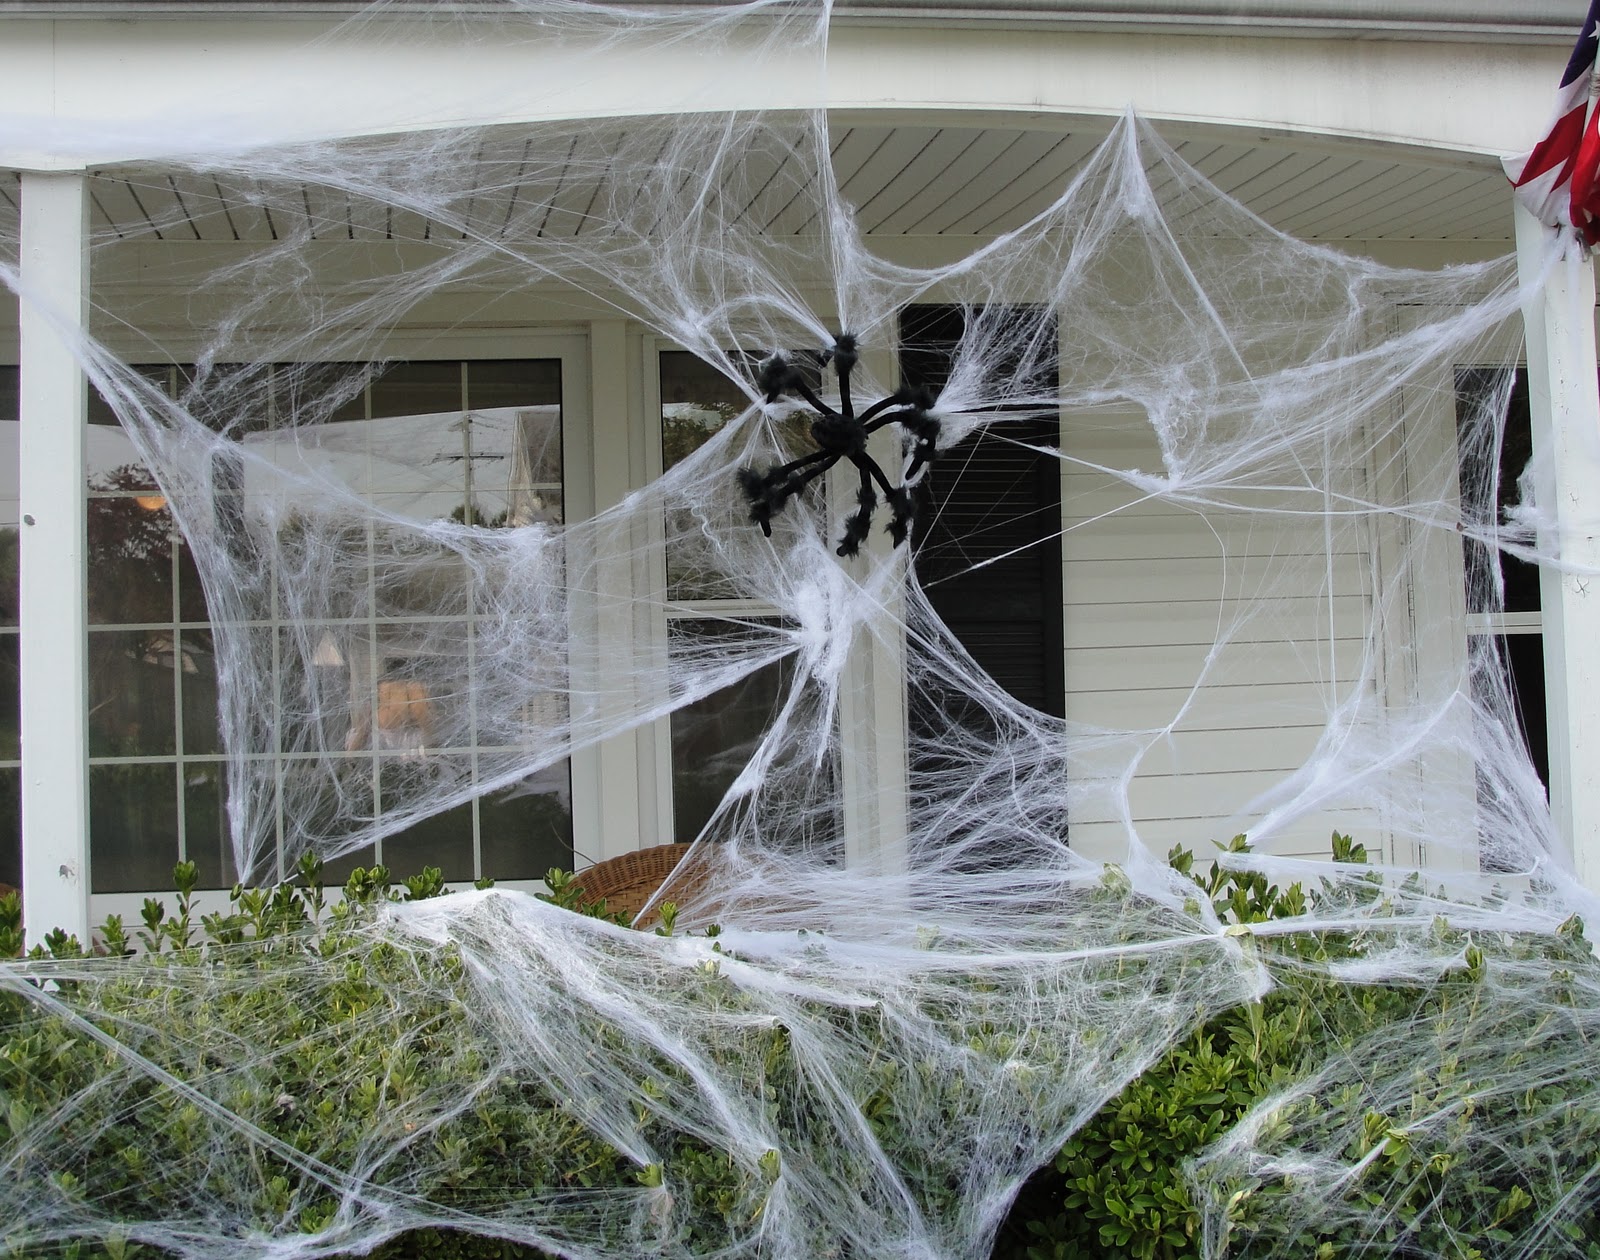 Spider Halloween Decorations